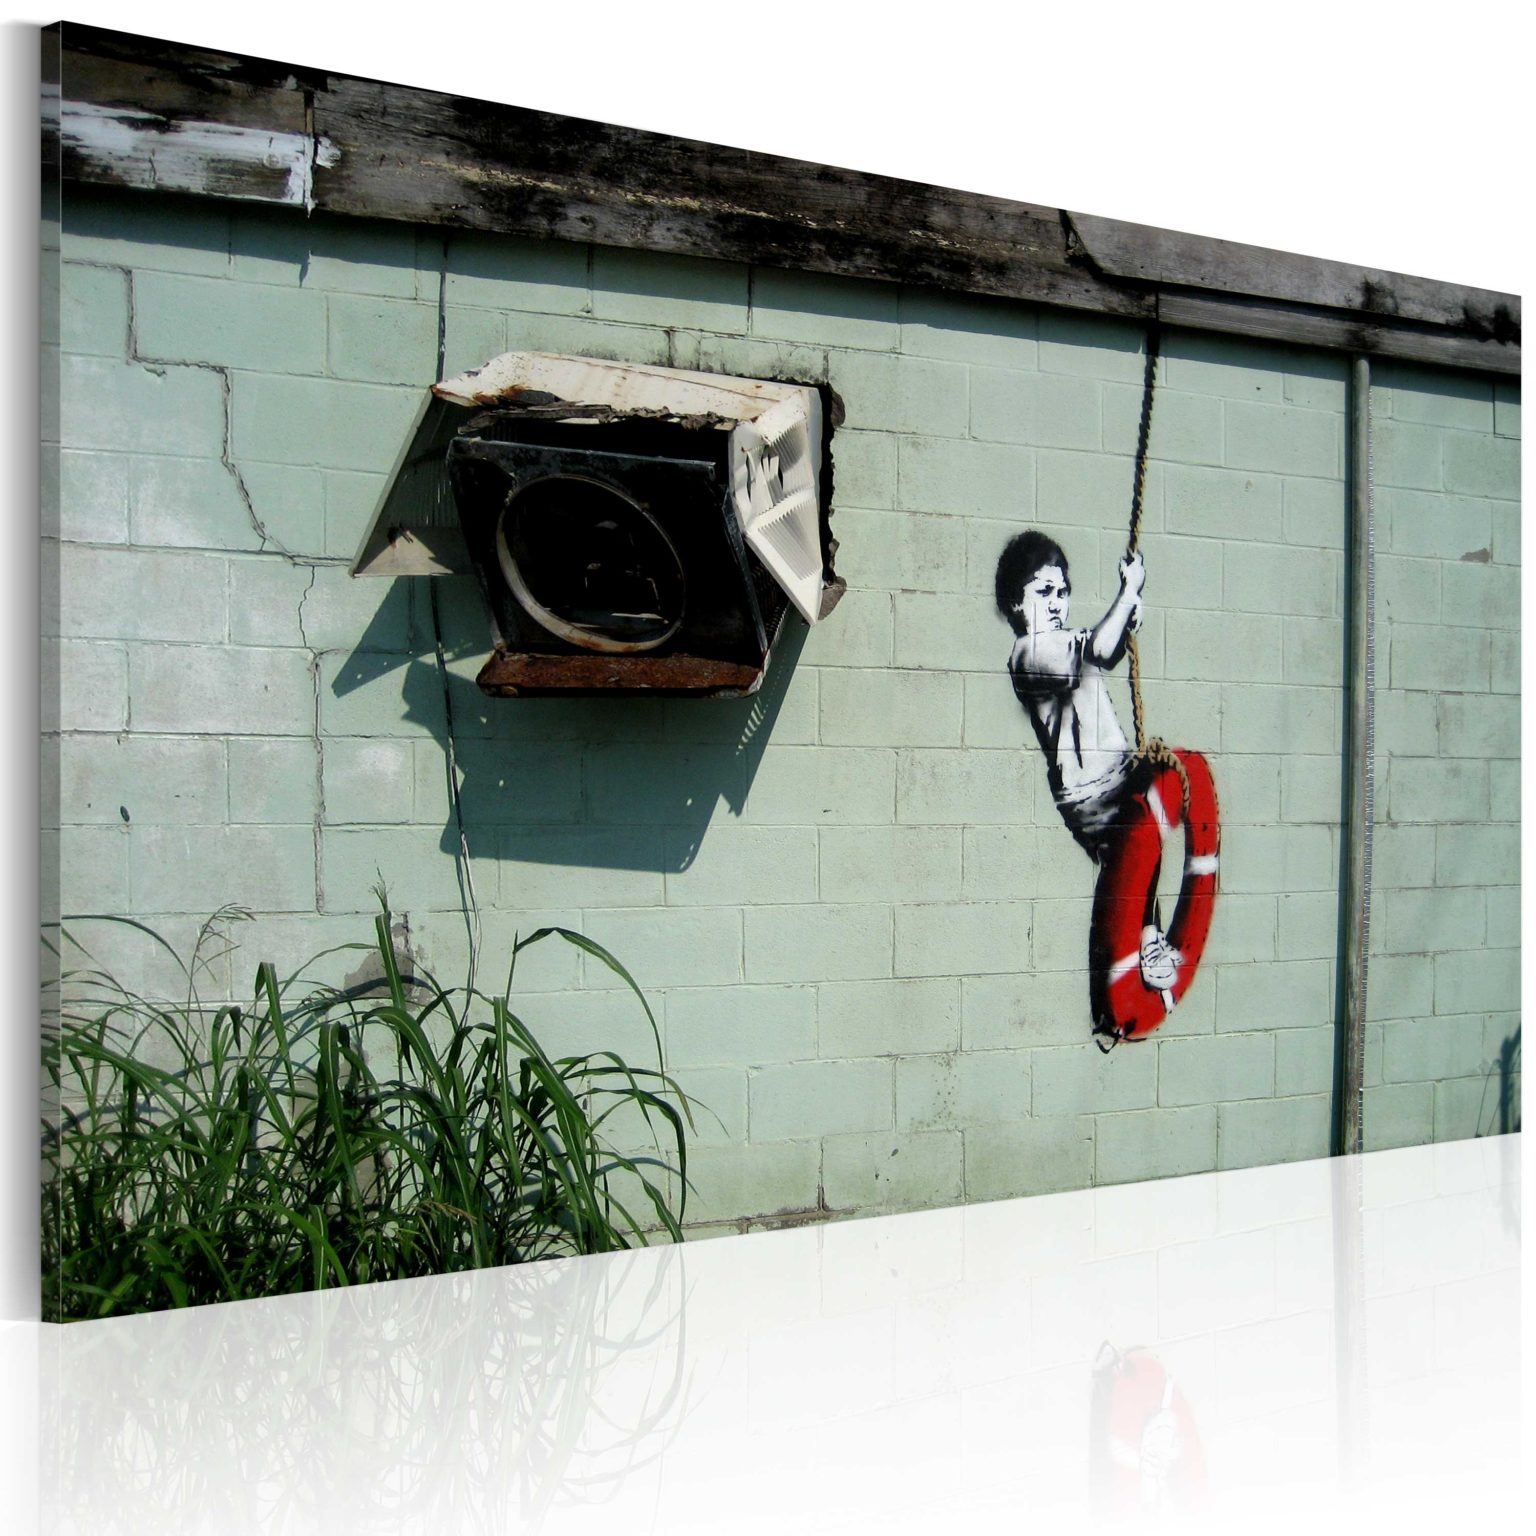 Tableau - Garçon sur une balançoire (Banksy) fait partie des tableaux murales de la collection de worldofwomen découvrez ce magnifique tableau exclusif chez nous